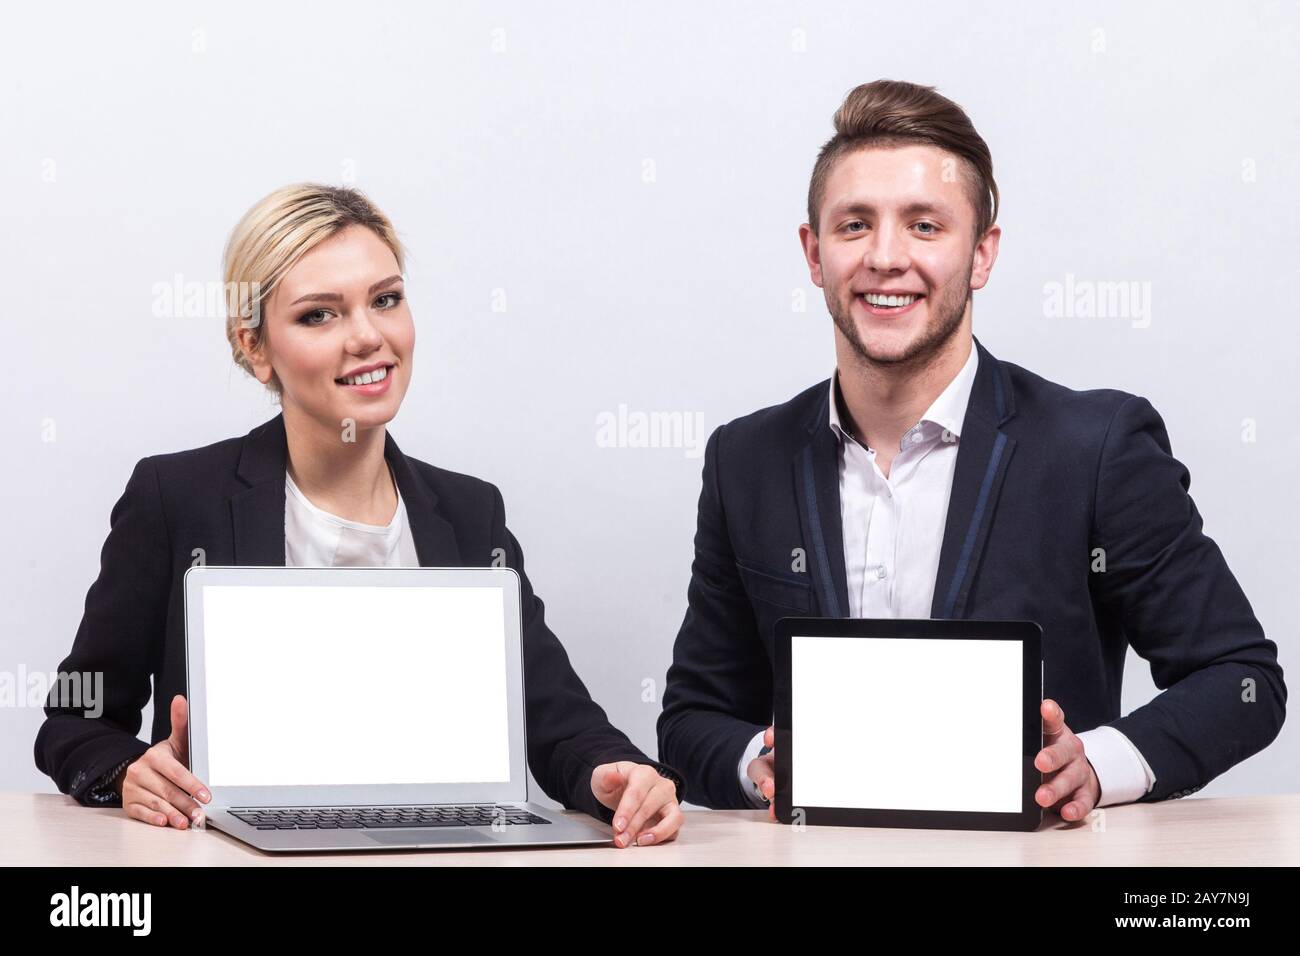 Bild des Teams von Büroangestellten, die beide ein Tablet halten Stockfoto